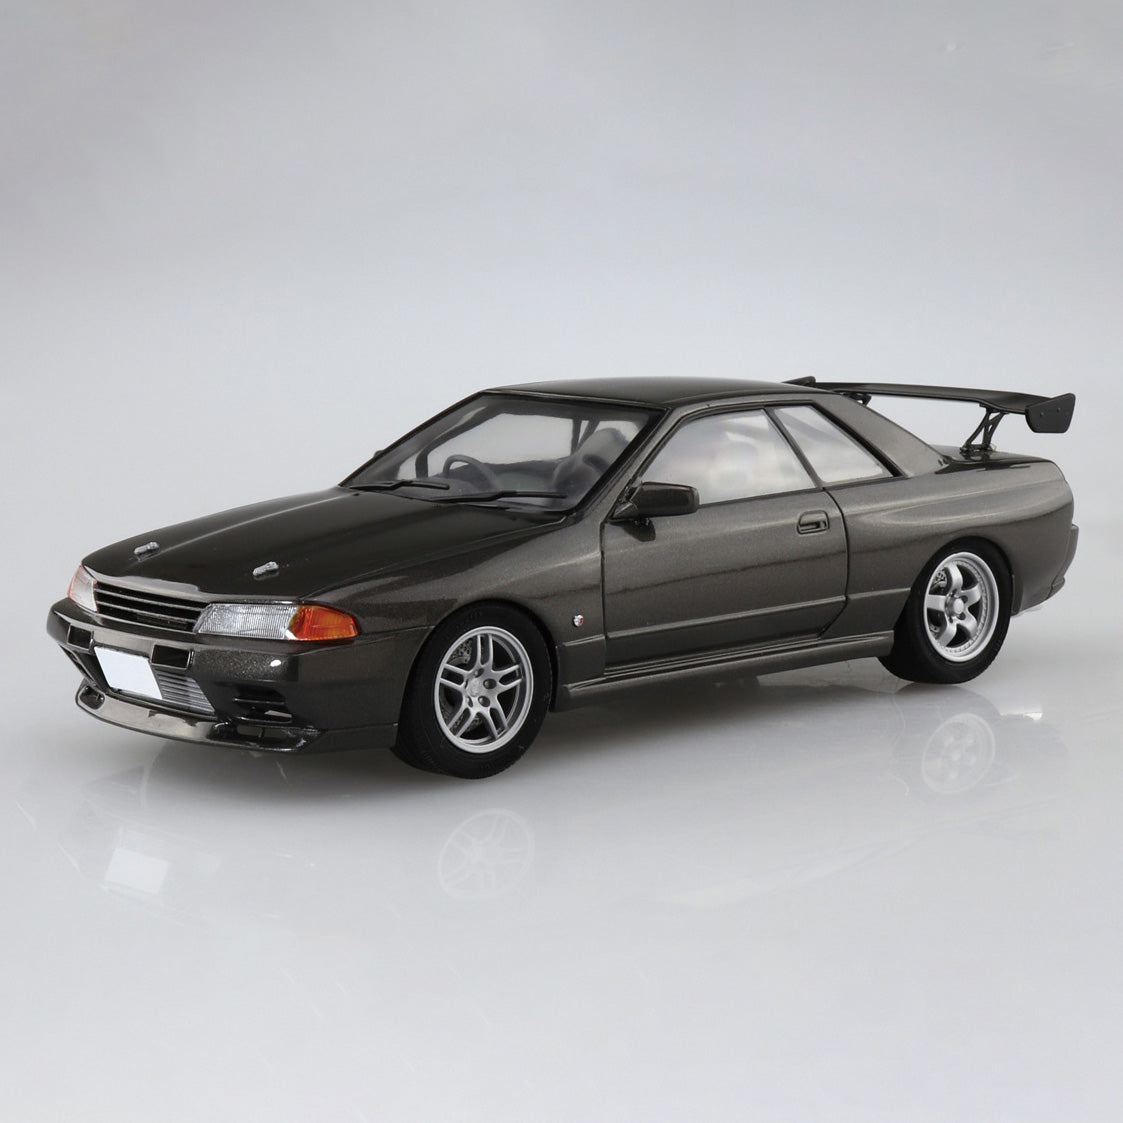 Aoshima - Initial D - No. 4 - Rin Hojo BNR32 Skyline GT-R Model Kit (1/24 Scale) - Marvelous Toys